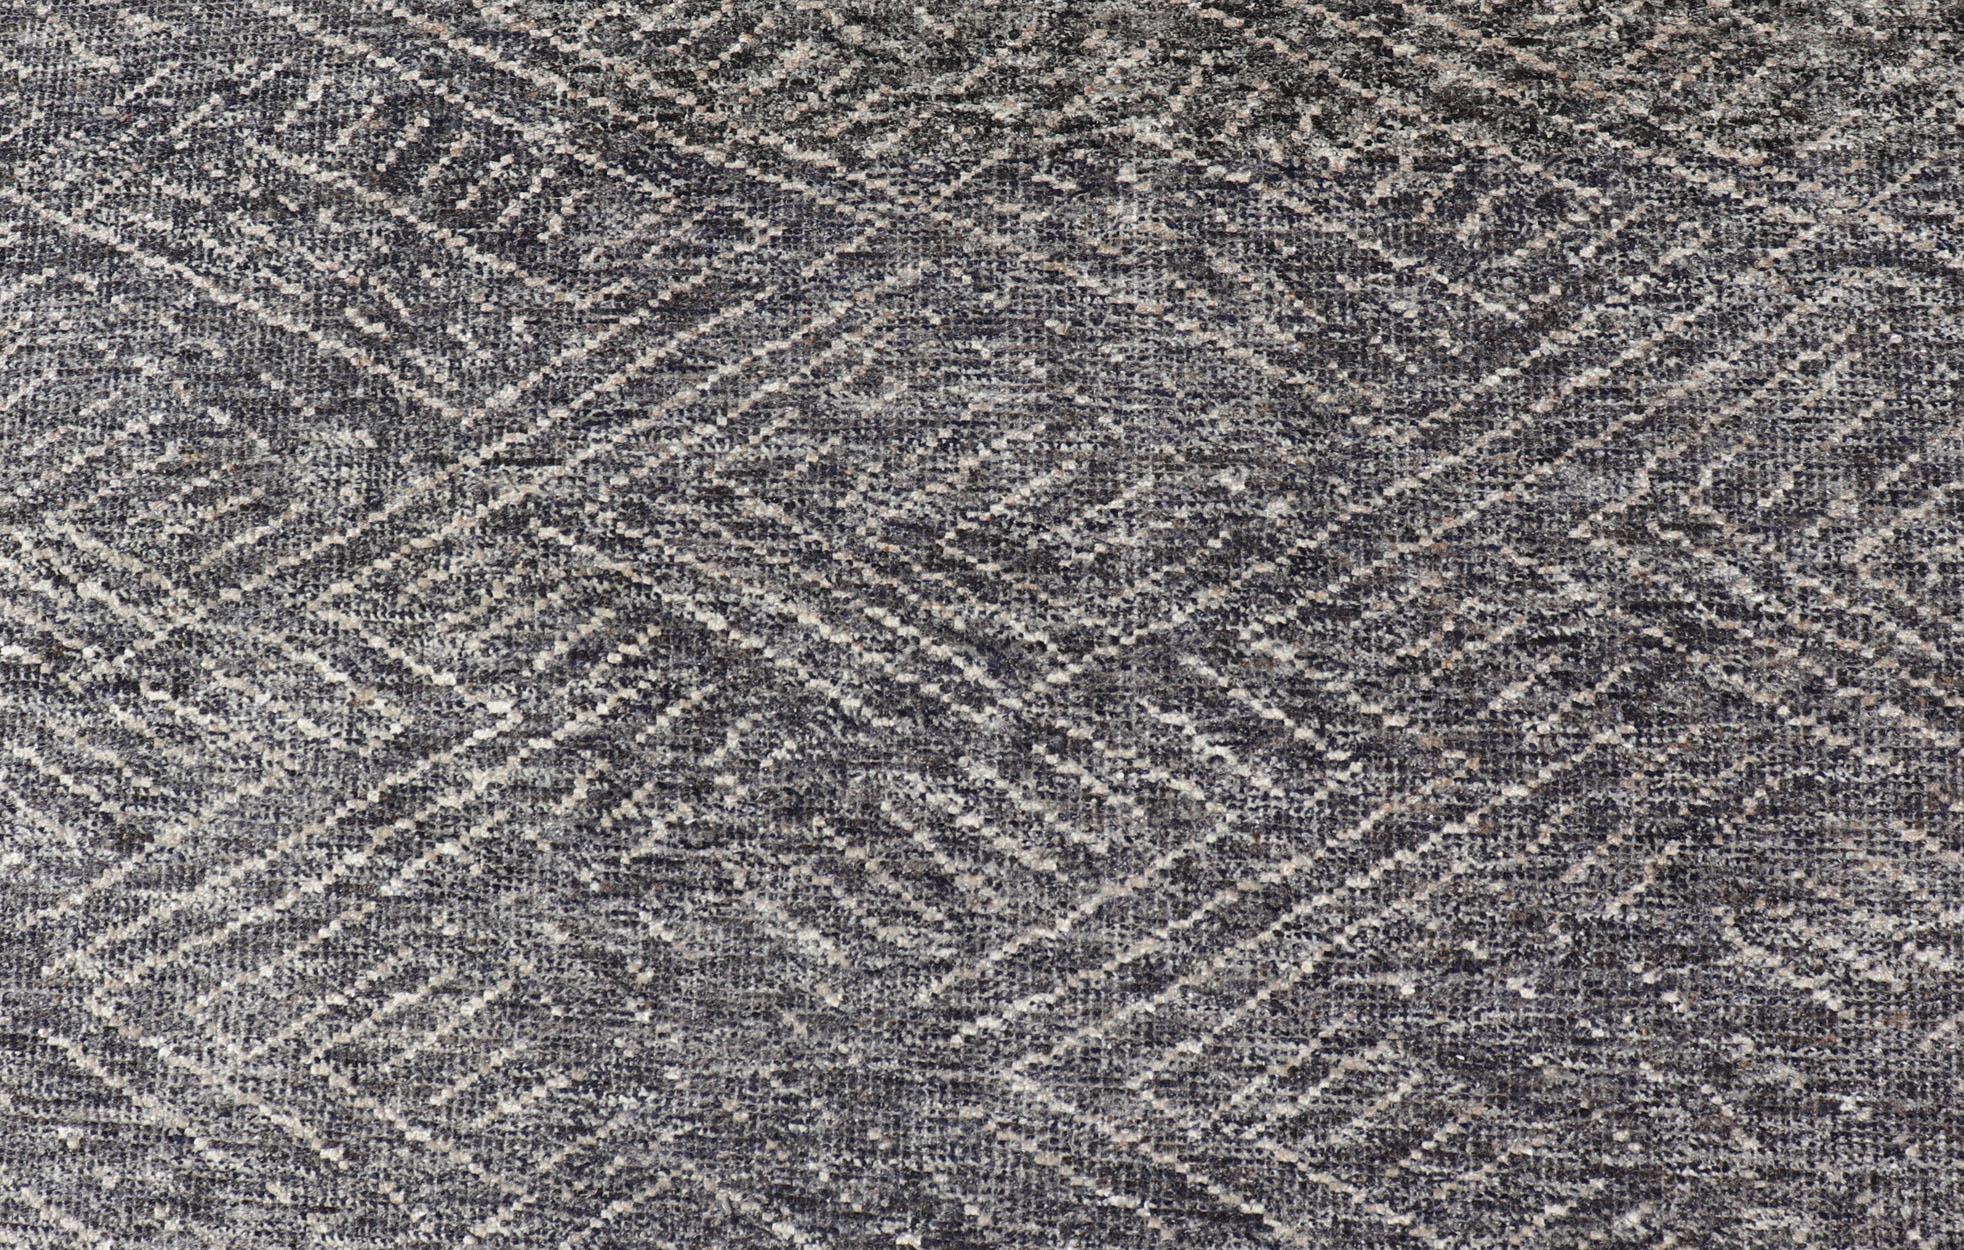 Maße 6 x 9 

Dieser moderne indische Teppich zeichnet sich durch ein abstraktes Muster aus, das einem Kreuzschraffurmuster ähnelt. Der gesamte Teppich ist in Anthrazit und hellem Creme gehalten. 

Herkunftsland: Indien; Typ: Modern, Minimalistisch;